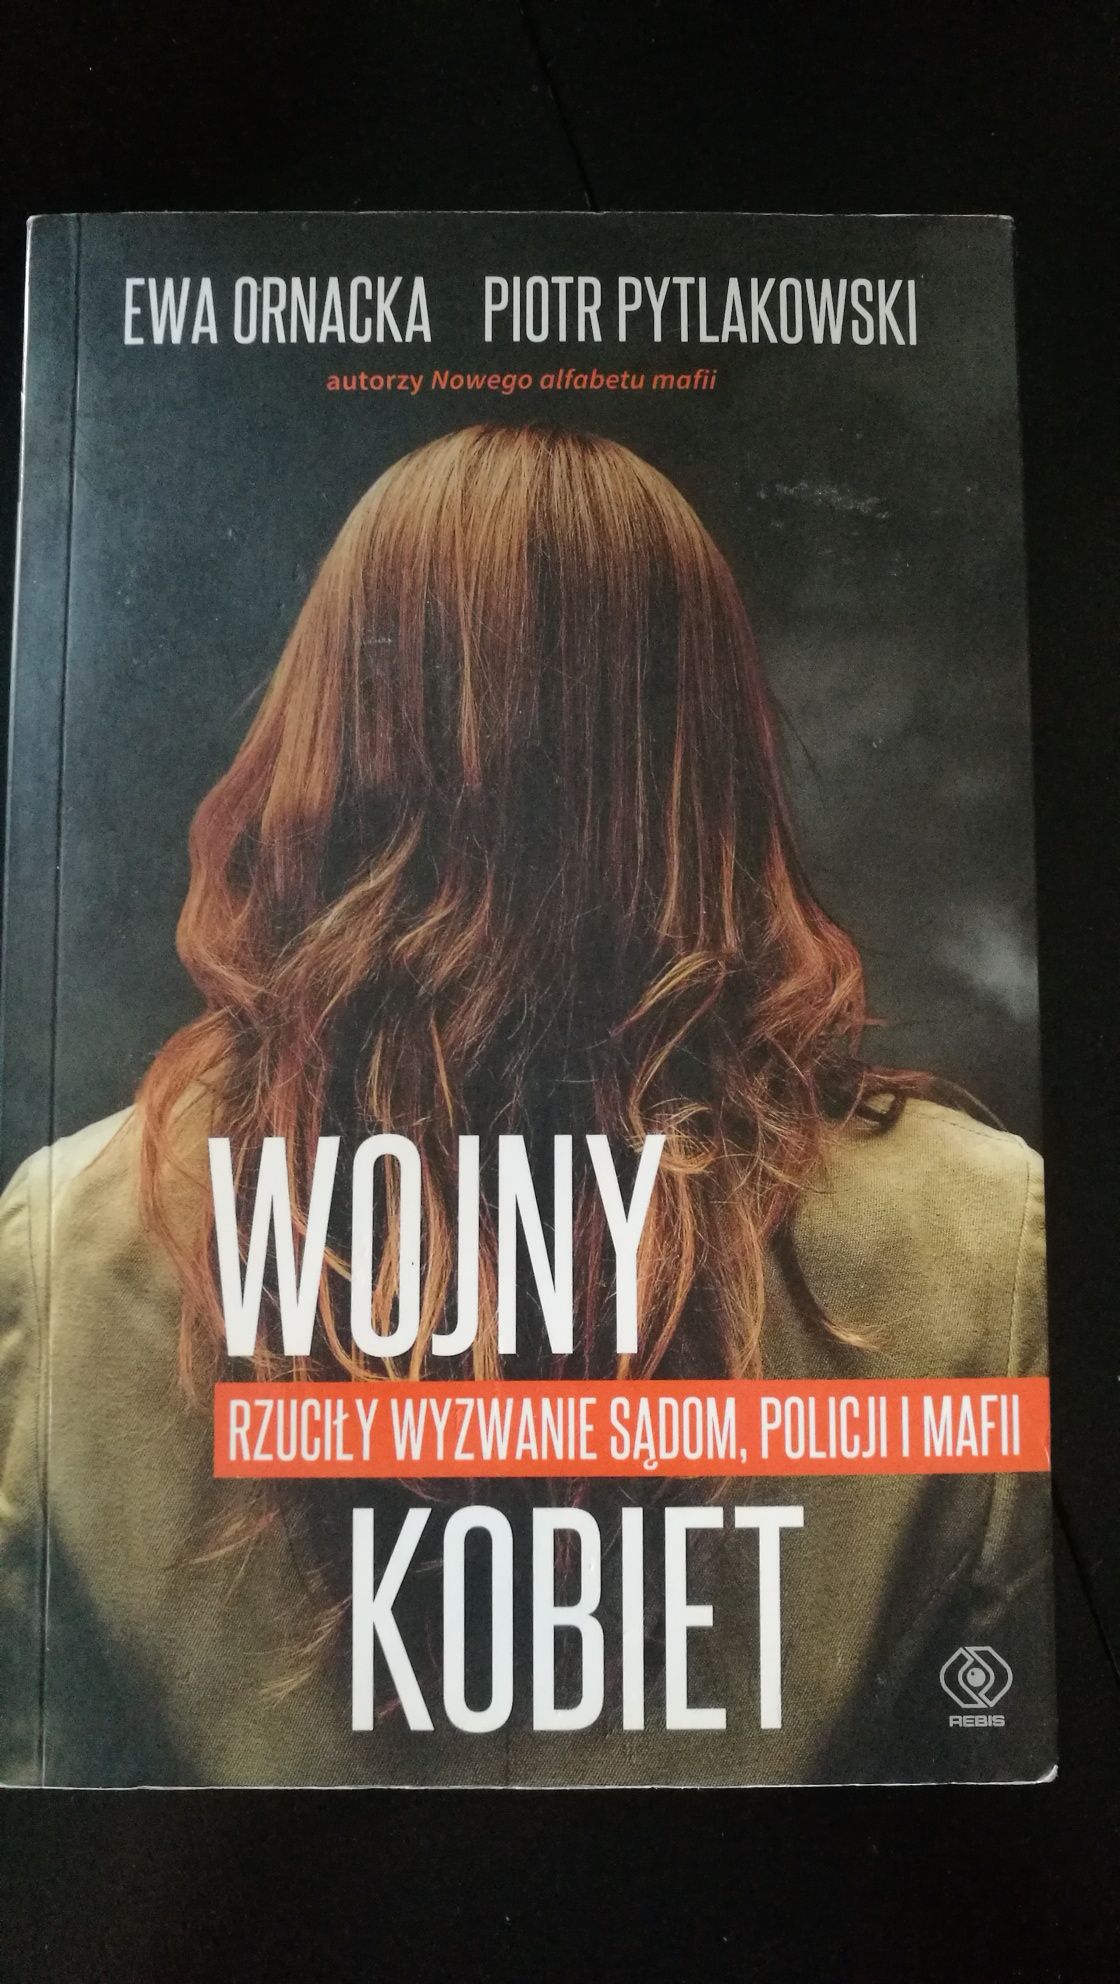 Wojny Kobiet, Ornacka, Pytlakowski